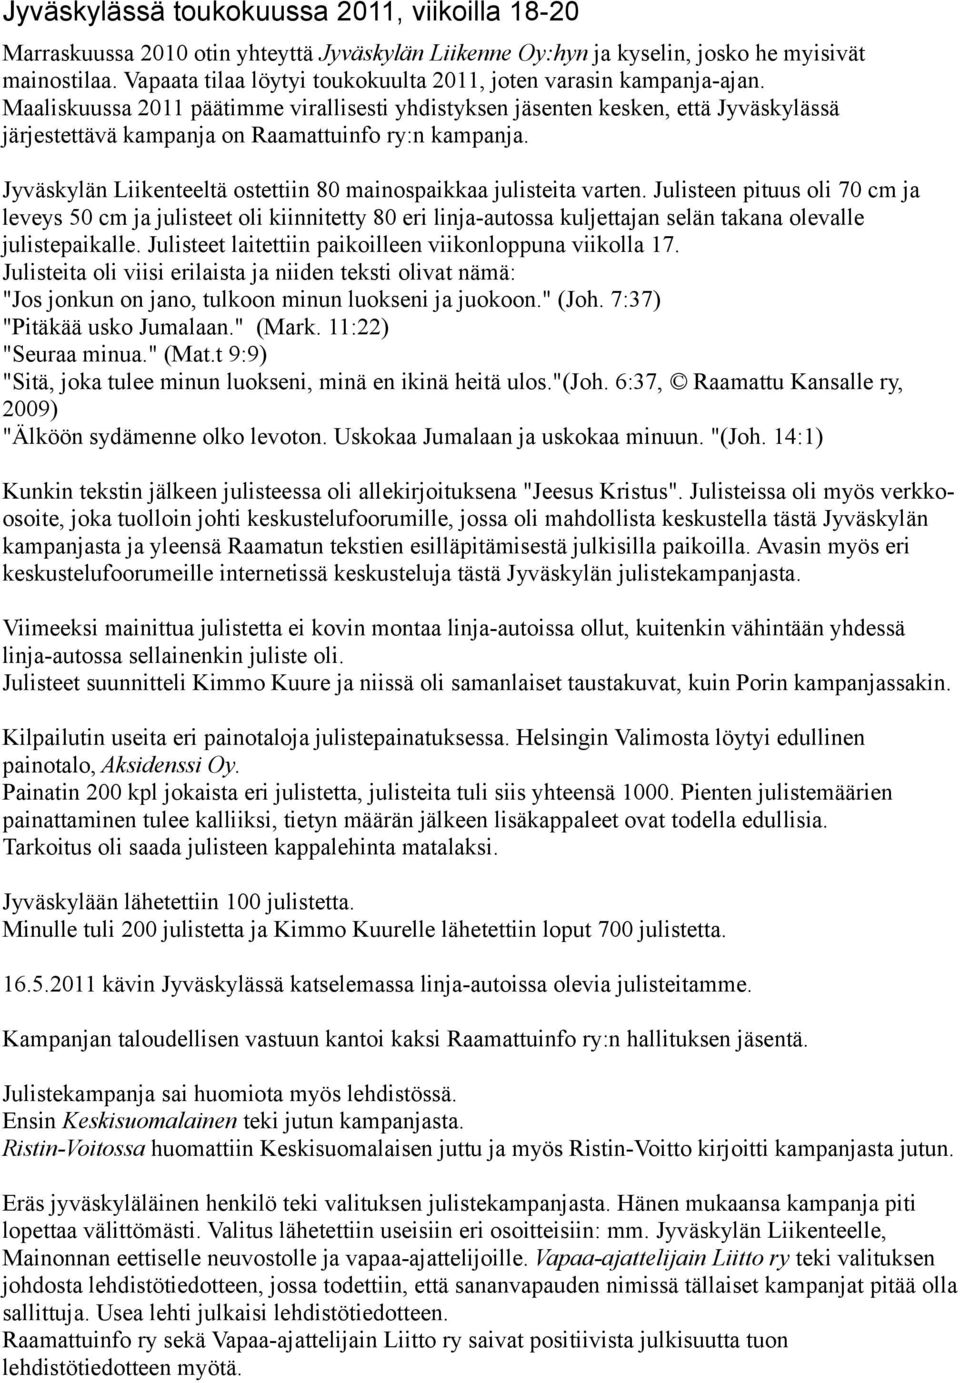 Maaliskuussa 2011 päätimme virallisesti yhdistyksen jäsenten kesken, että Jyväskylässä järjestettävä kampanja on Raamattuinfo ry:n kampanja.